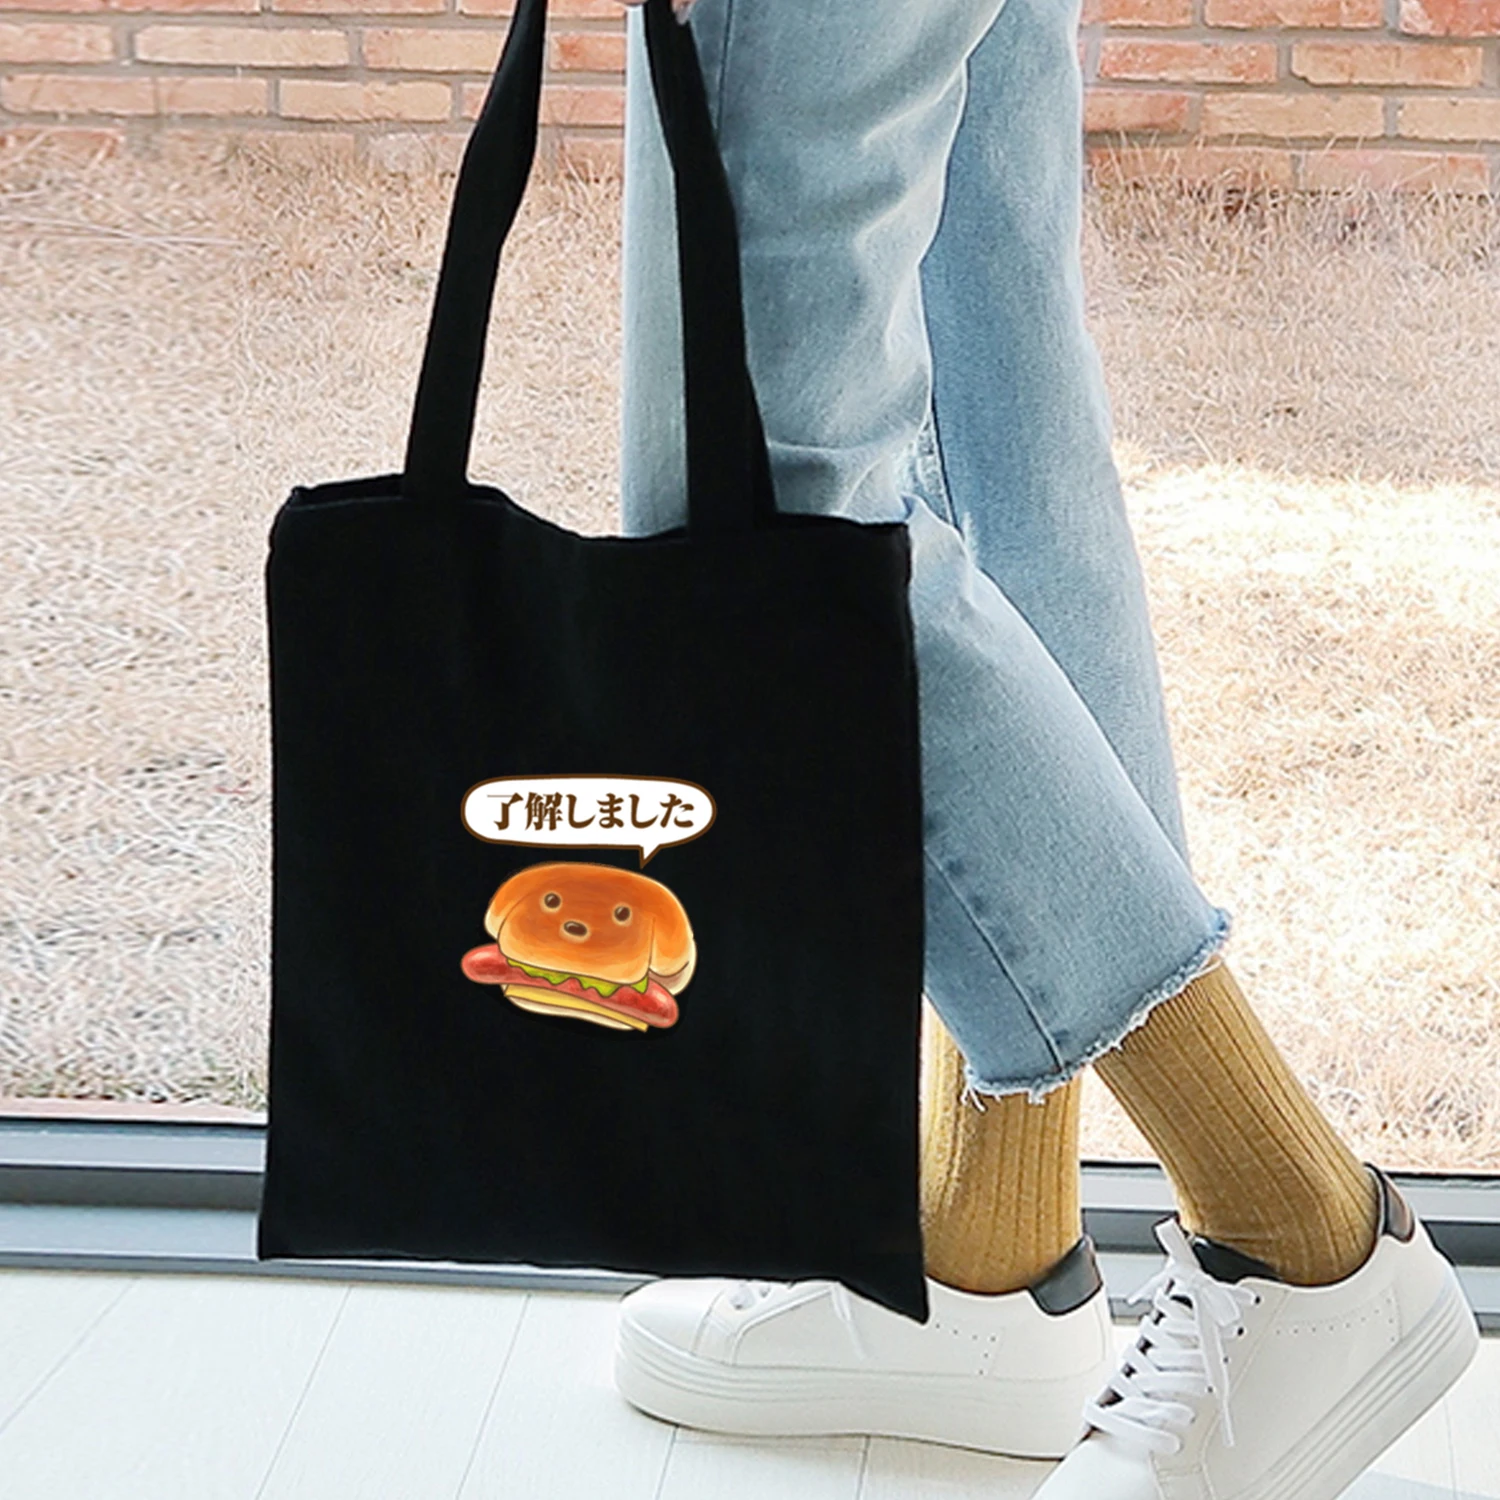 Японские особенности еда графический принт милый креативный хозяйственная сумка холщовая ткань многоразовая сумка для продуктов Большая складная эко сумка шоппер